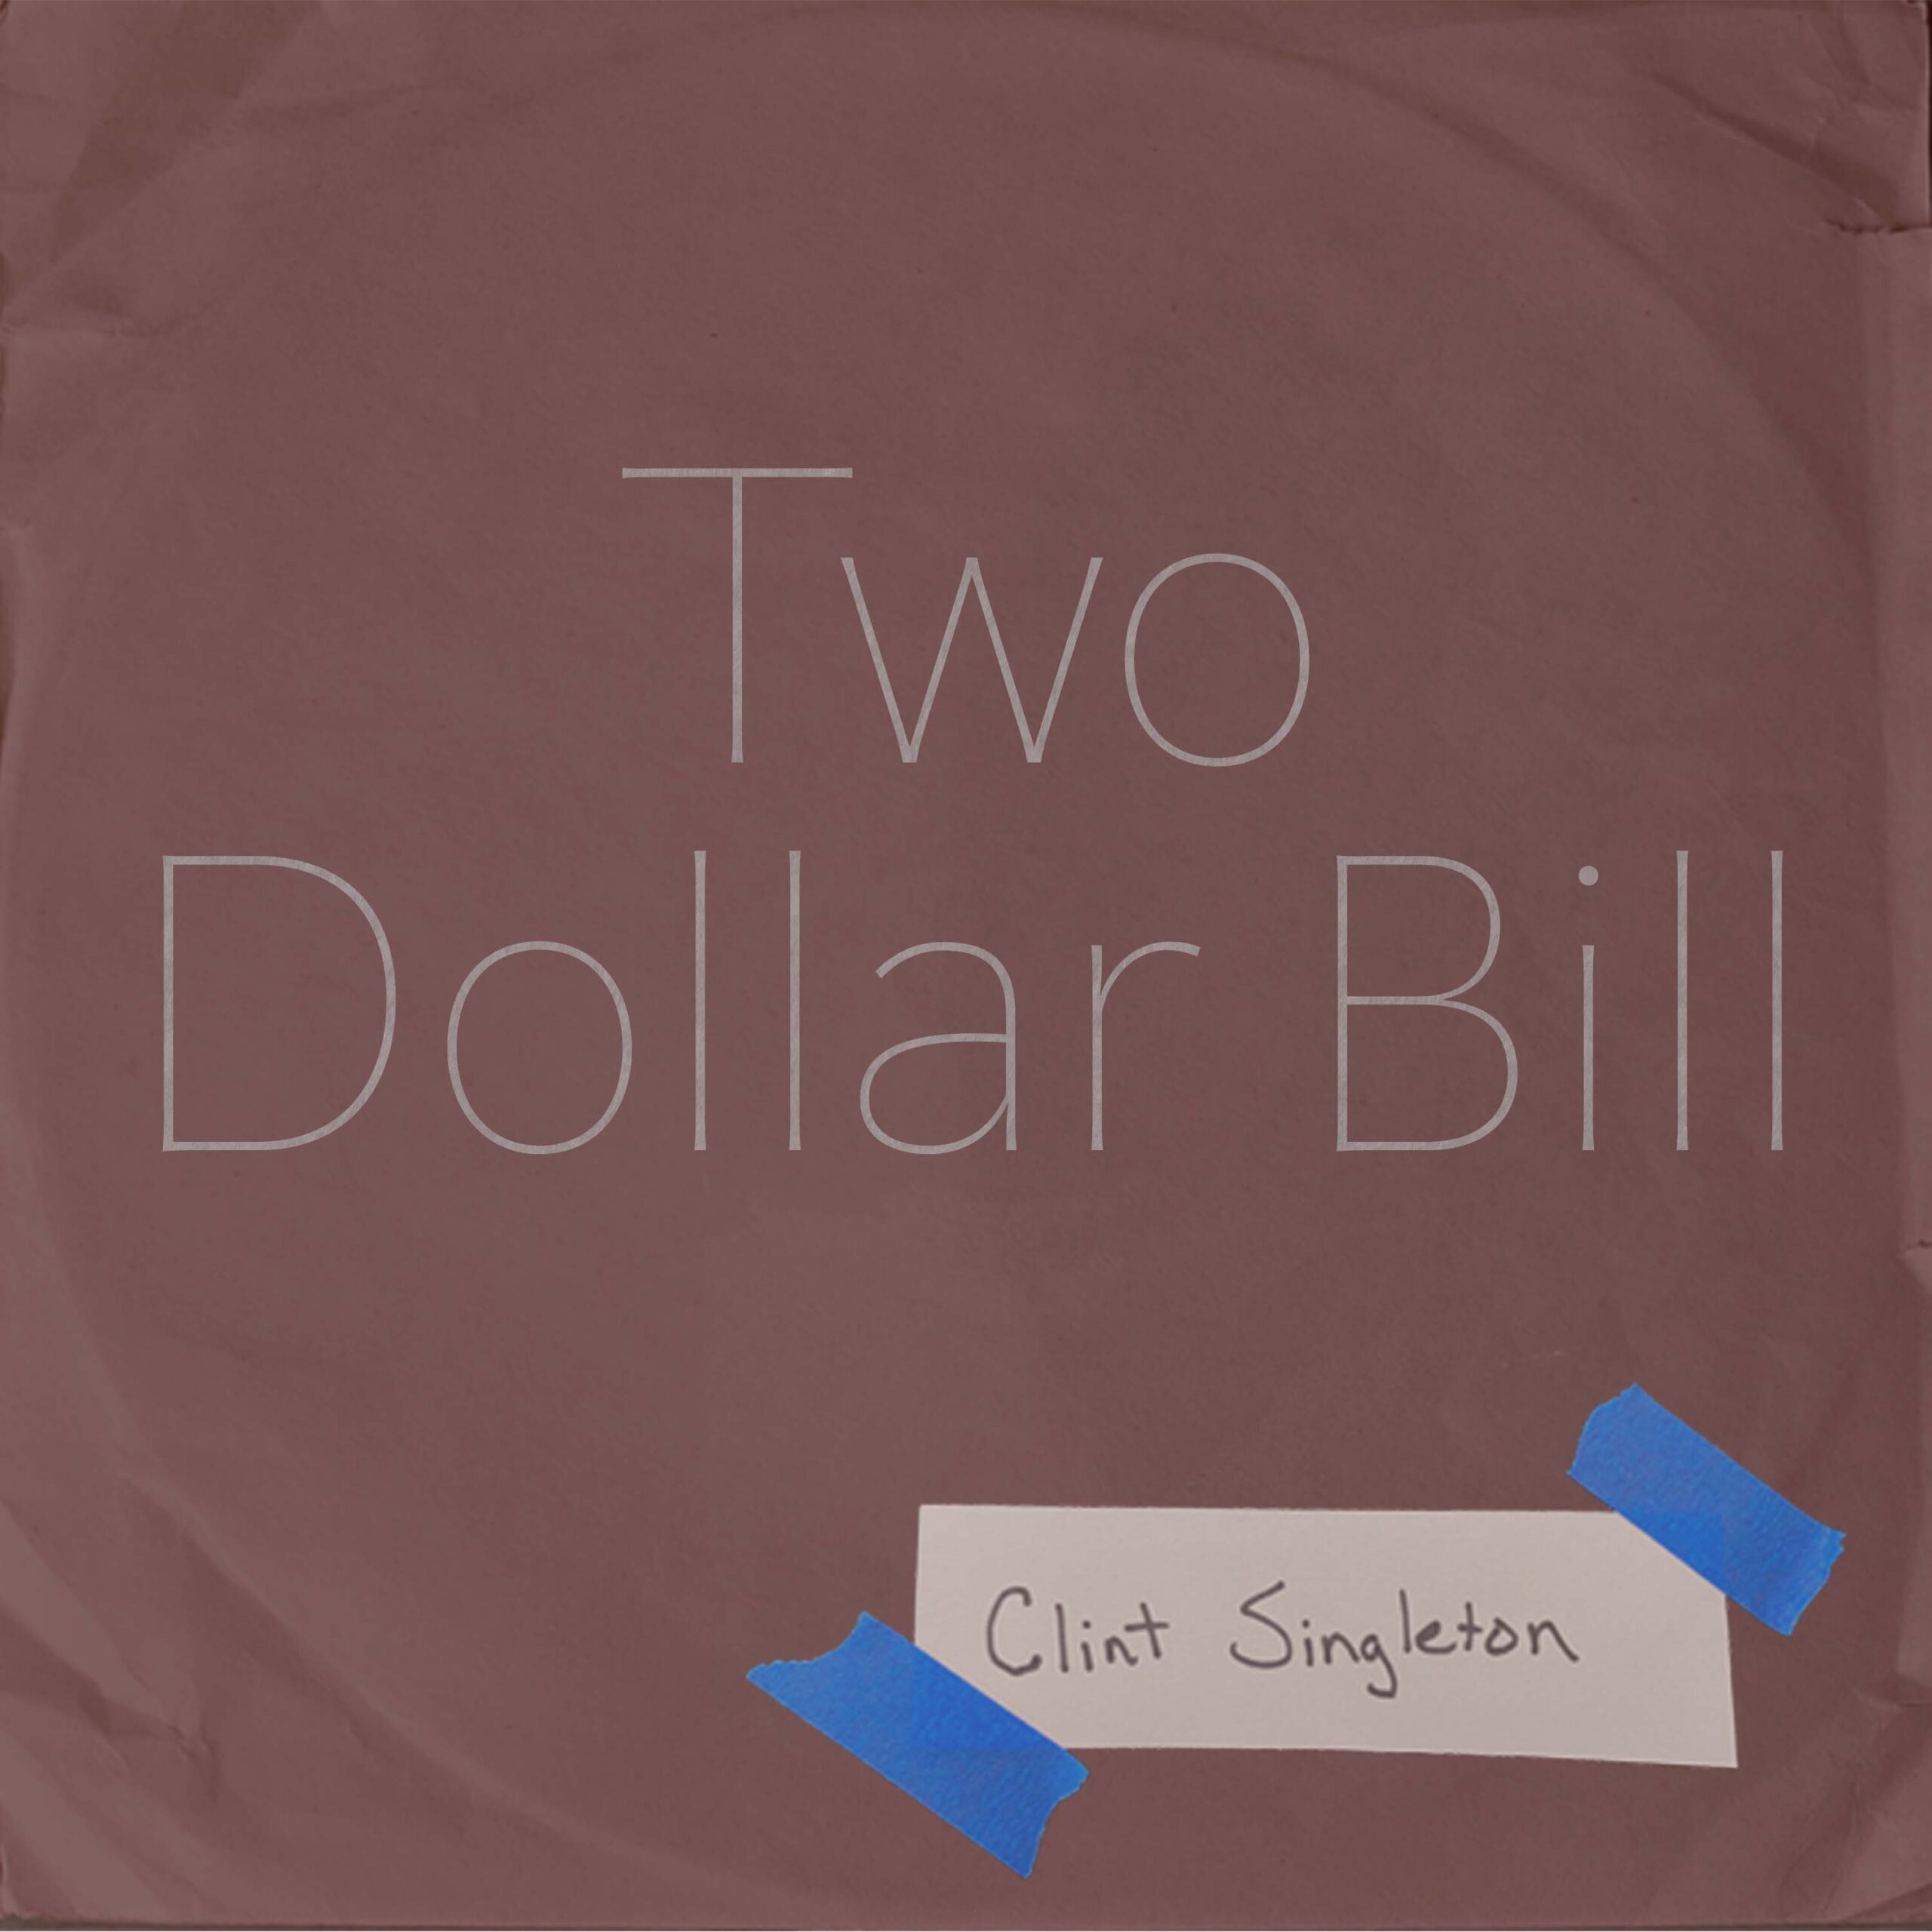 Two Dollar Bill (single) by Clint Singleton